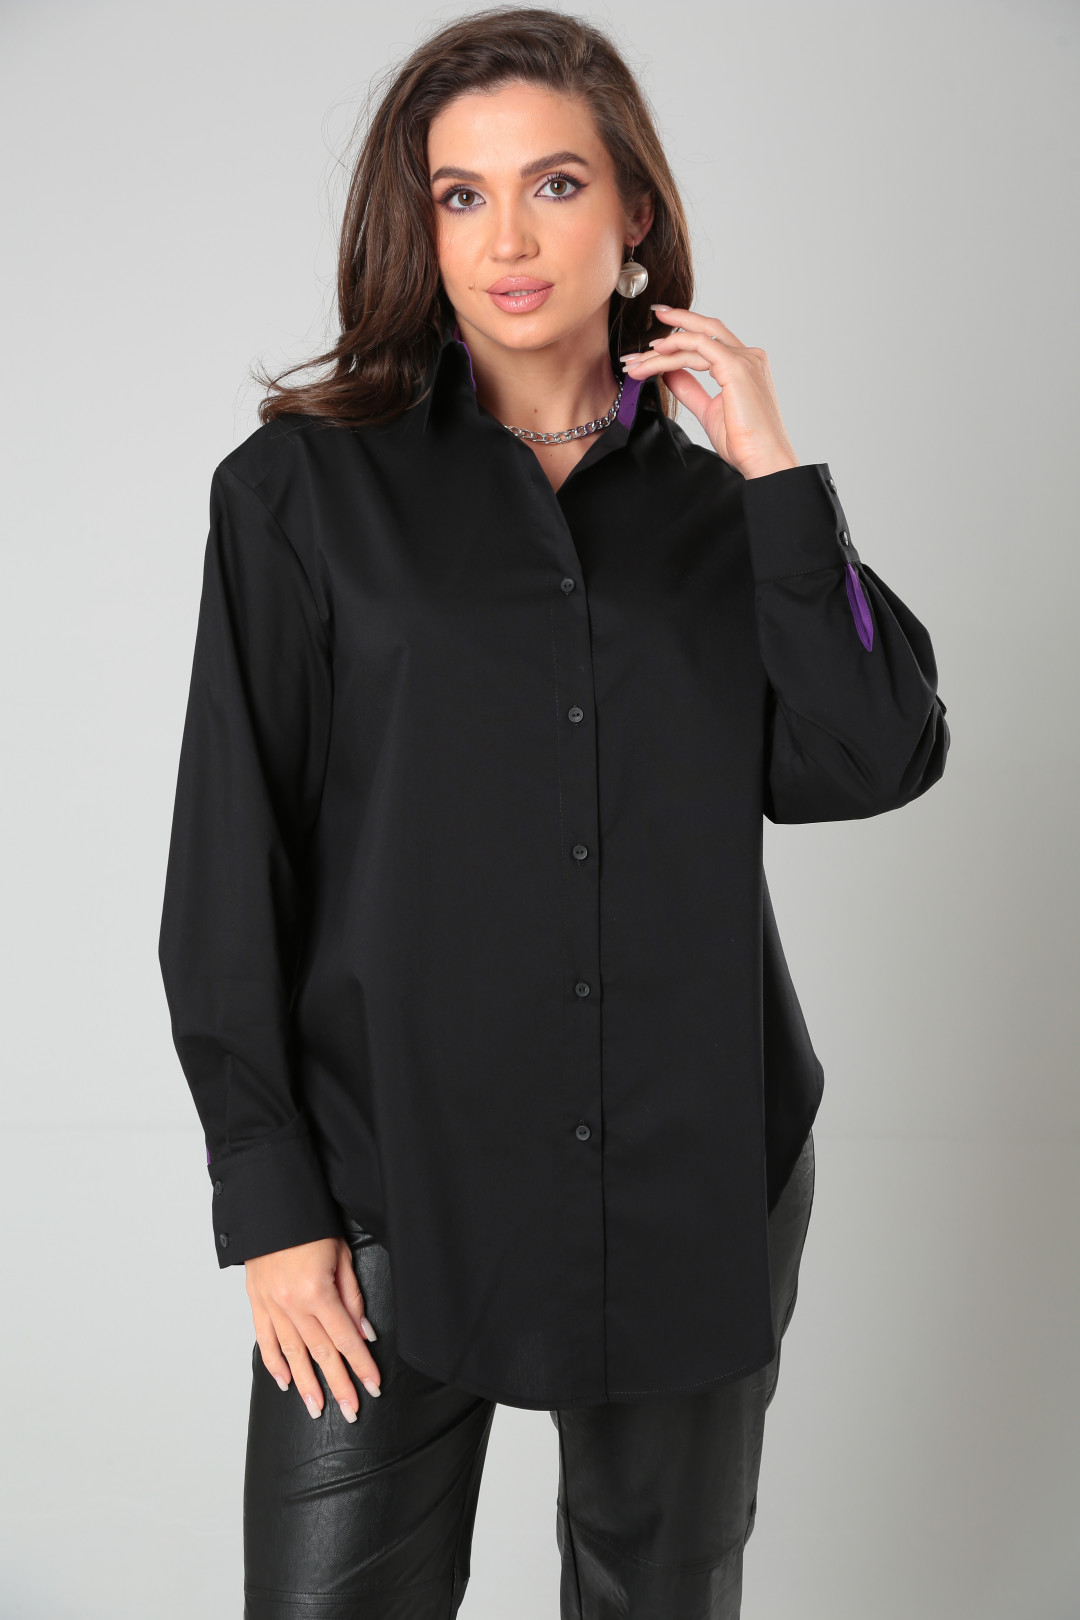 Рубашка KODAK BLISS 8315 черный+фиолетовый